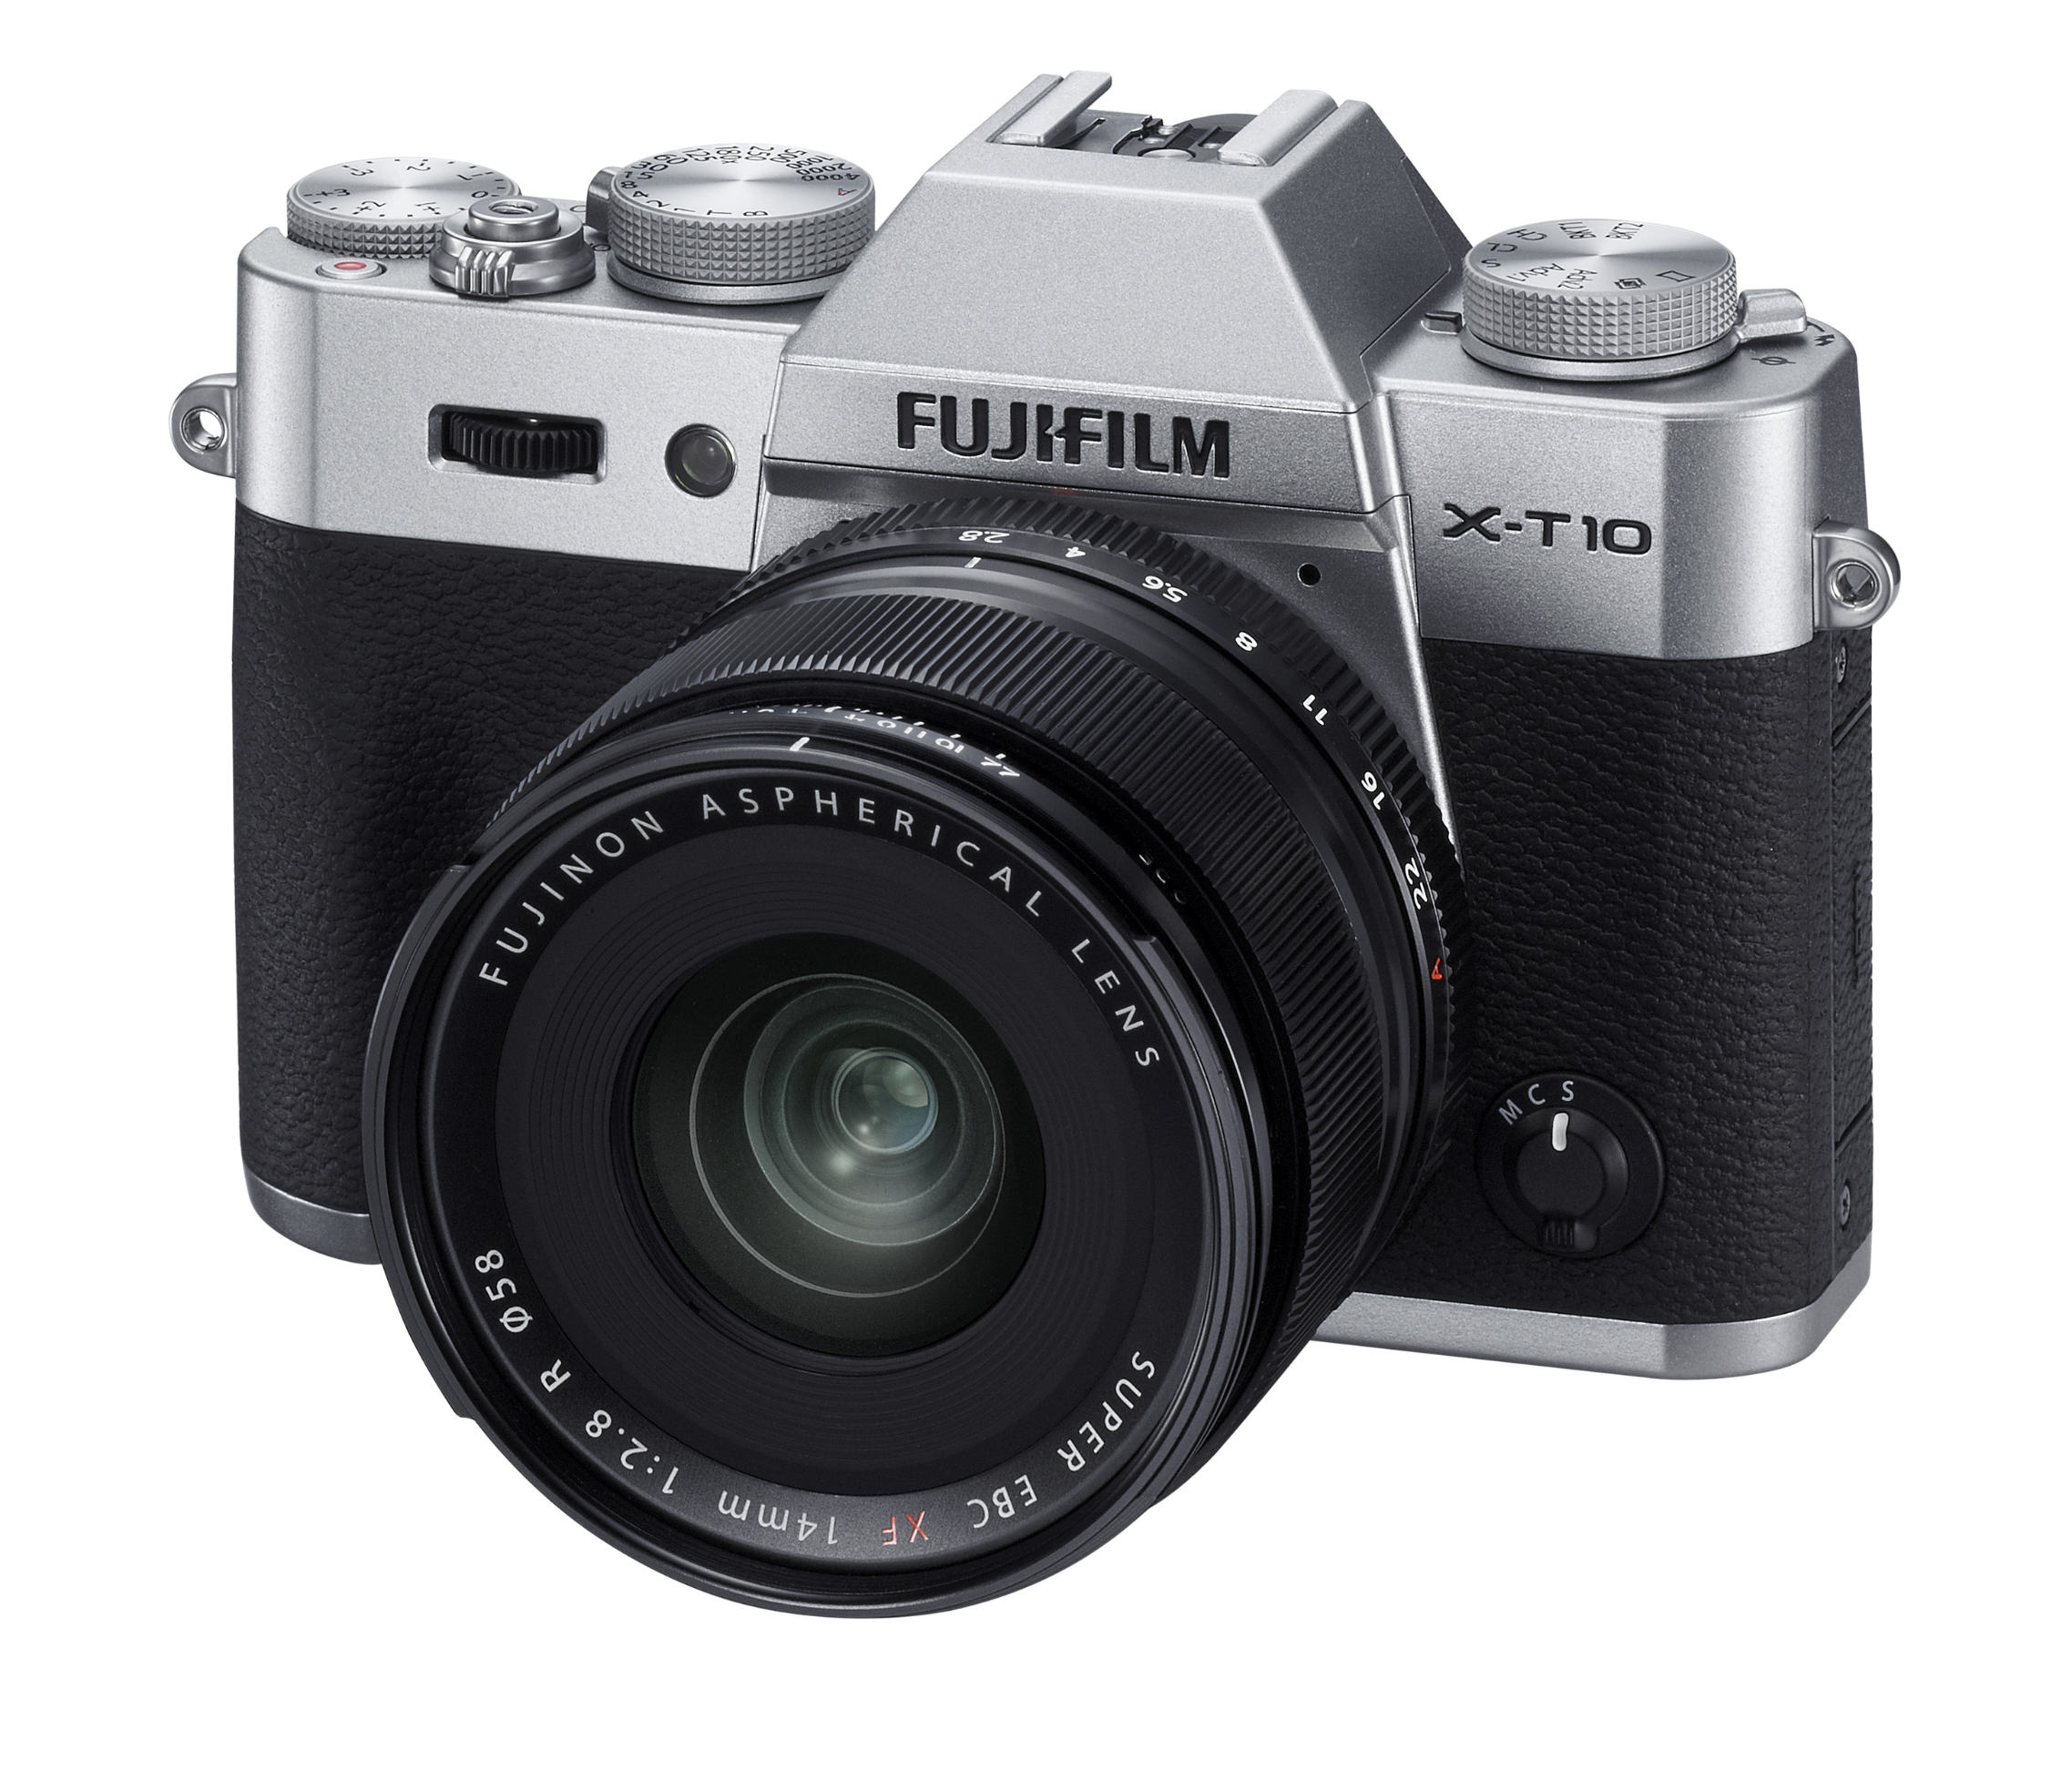 Con la X-T10, Fujifilm abbassa la soglia della serie X